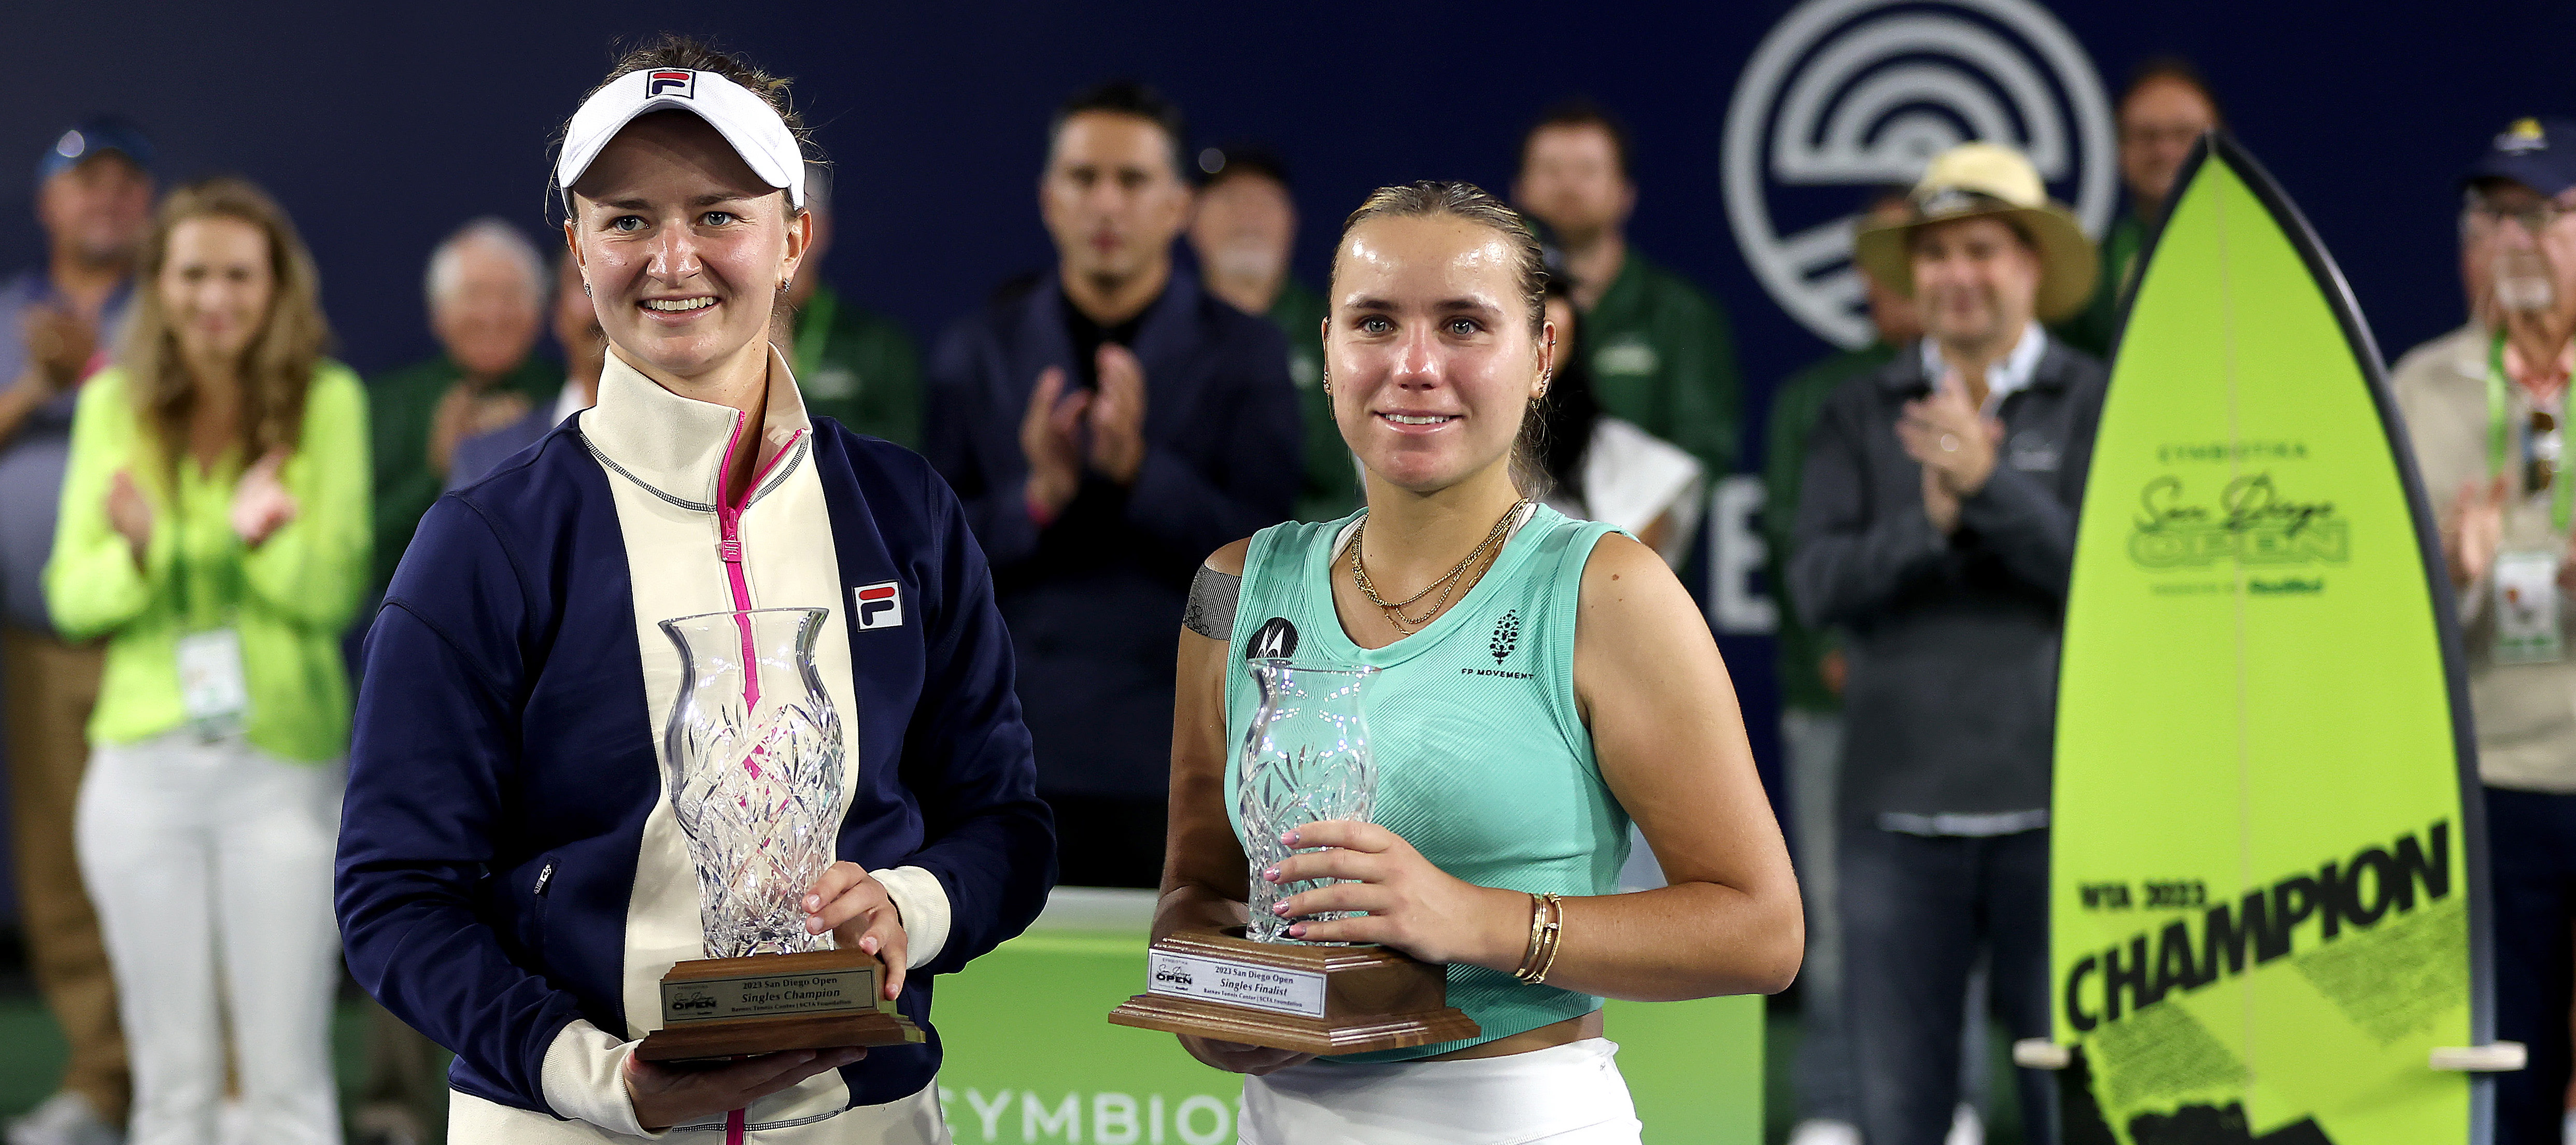 Barbora Krejcikova battles past Sofia Kenin in all-Grand Slam champion final in San Diego